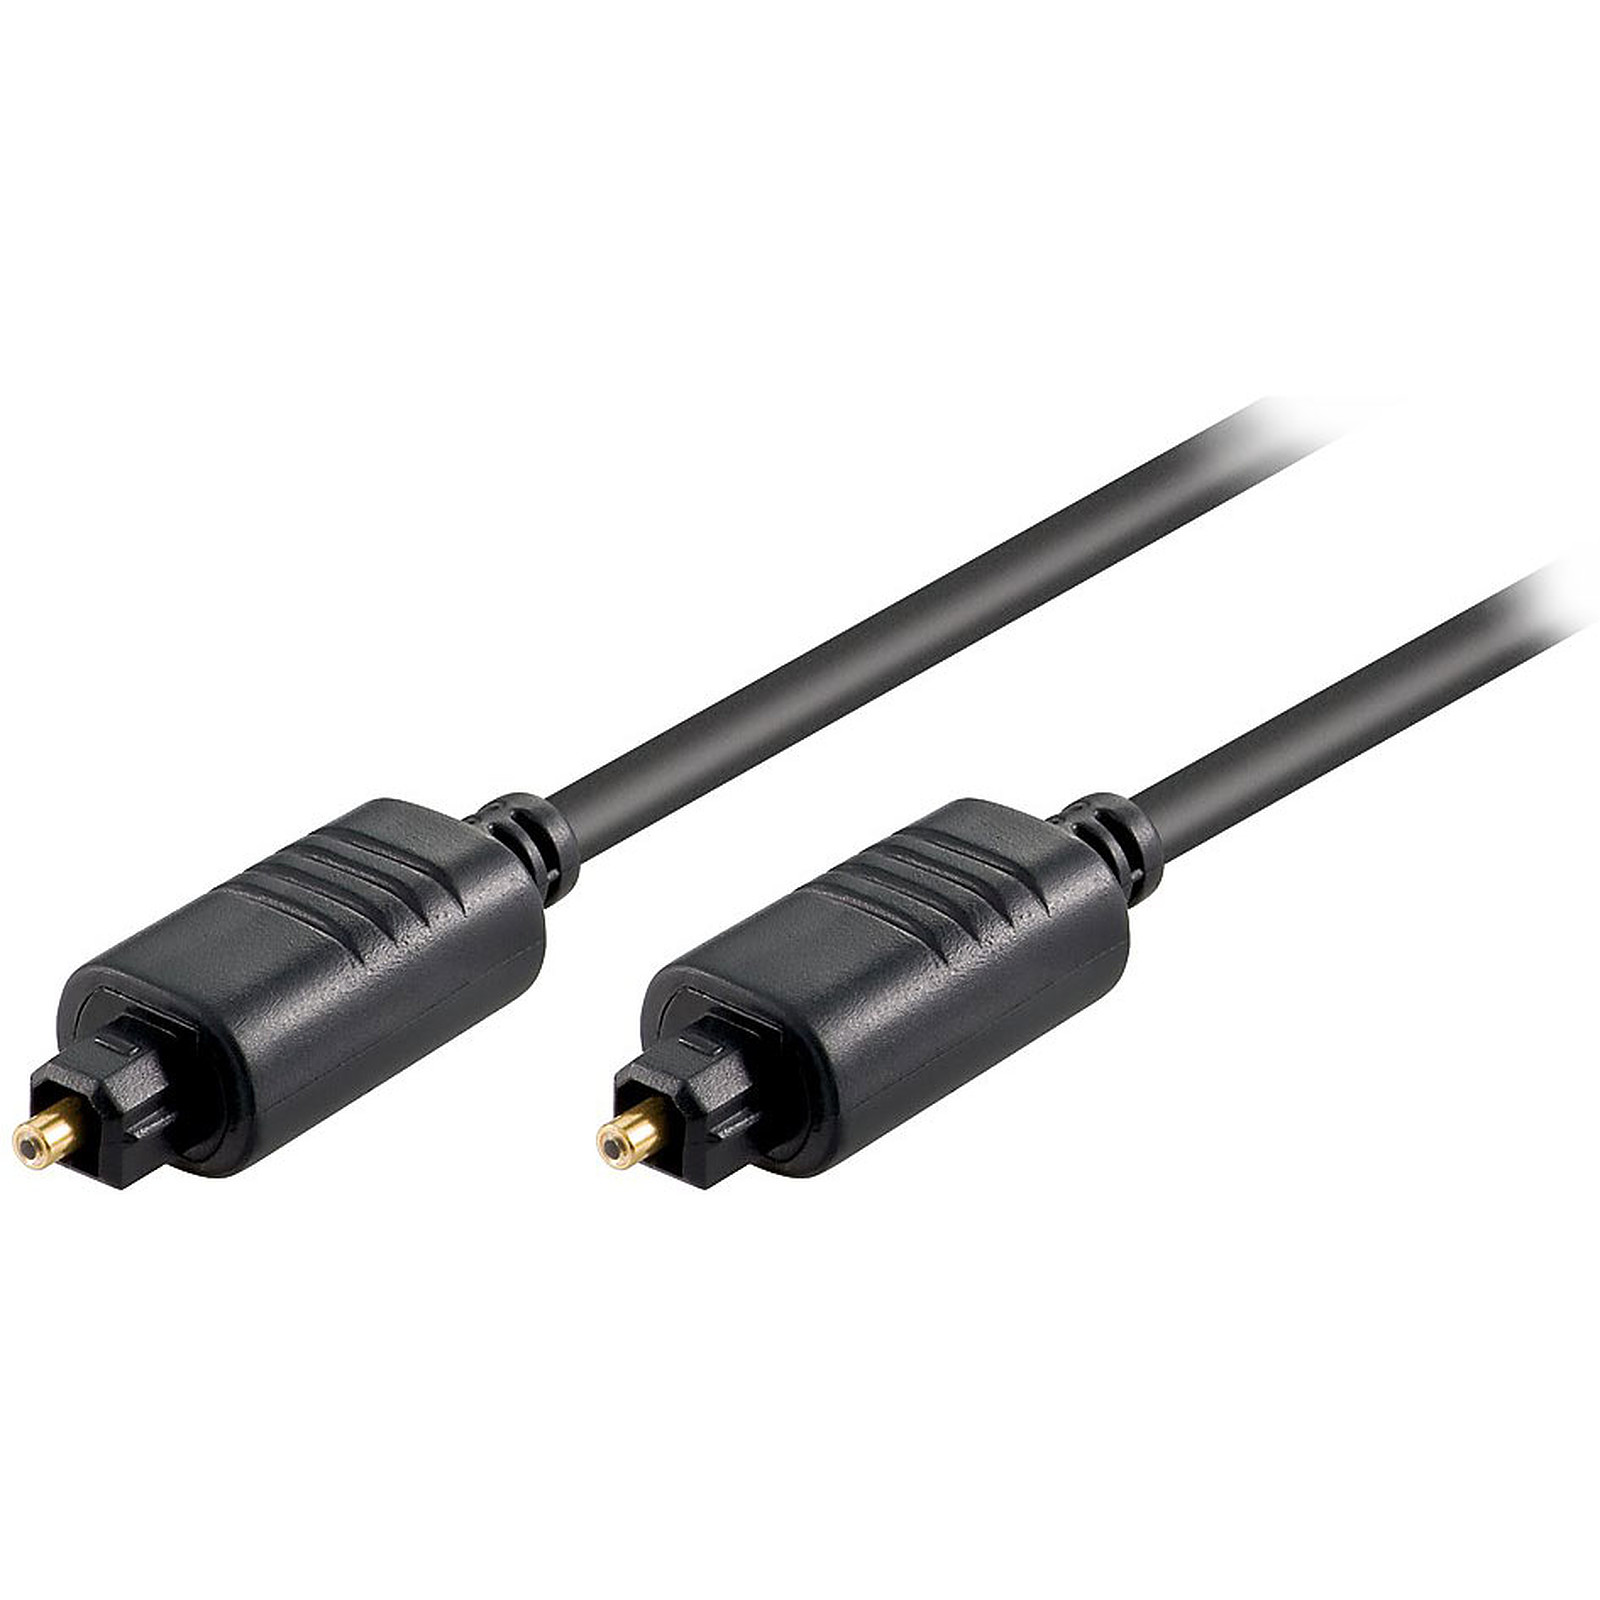 Cable audio numerique haute qualite Toslink Male/Male - 3 m - Cable audio numerique Generique